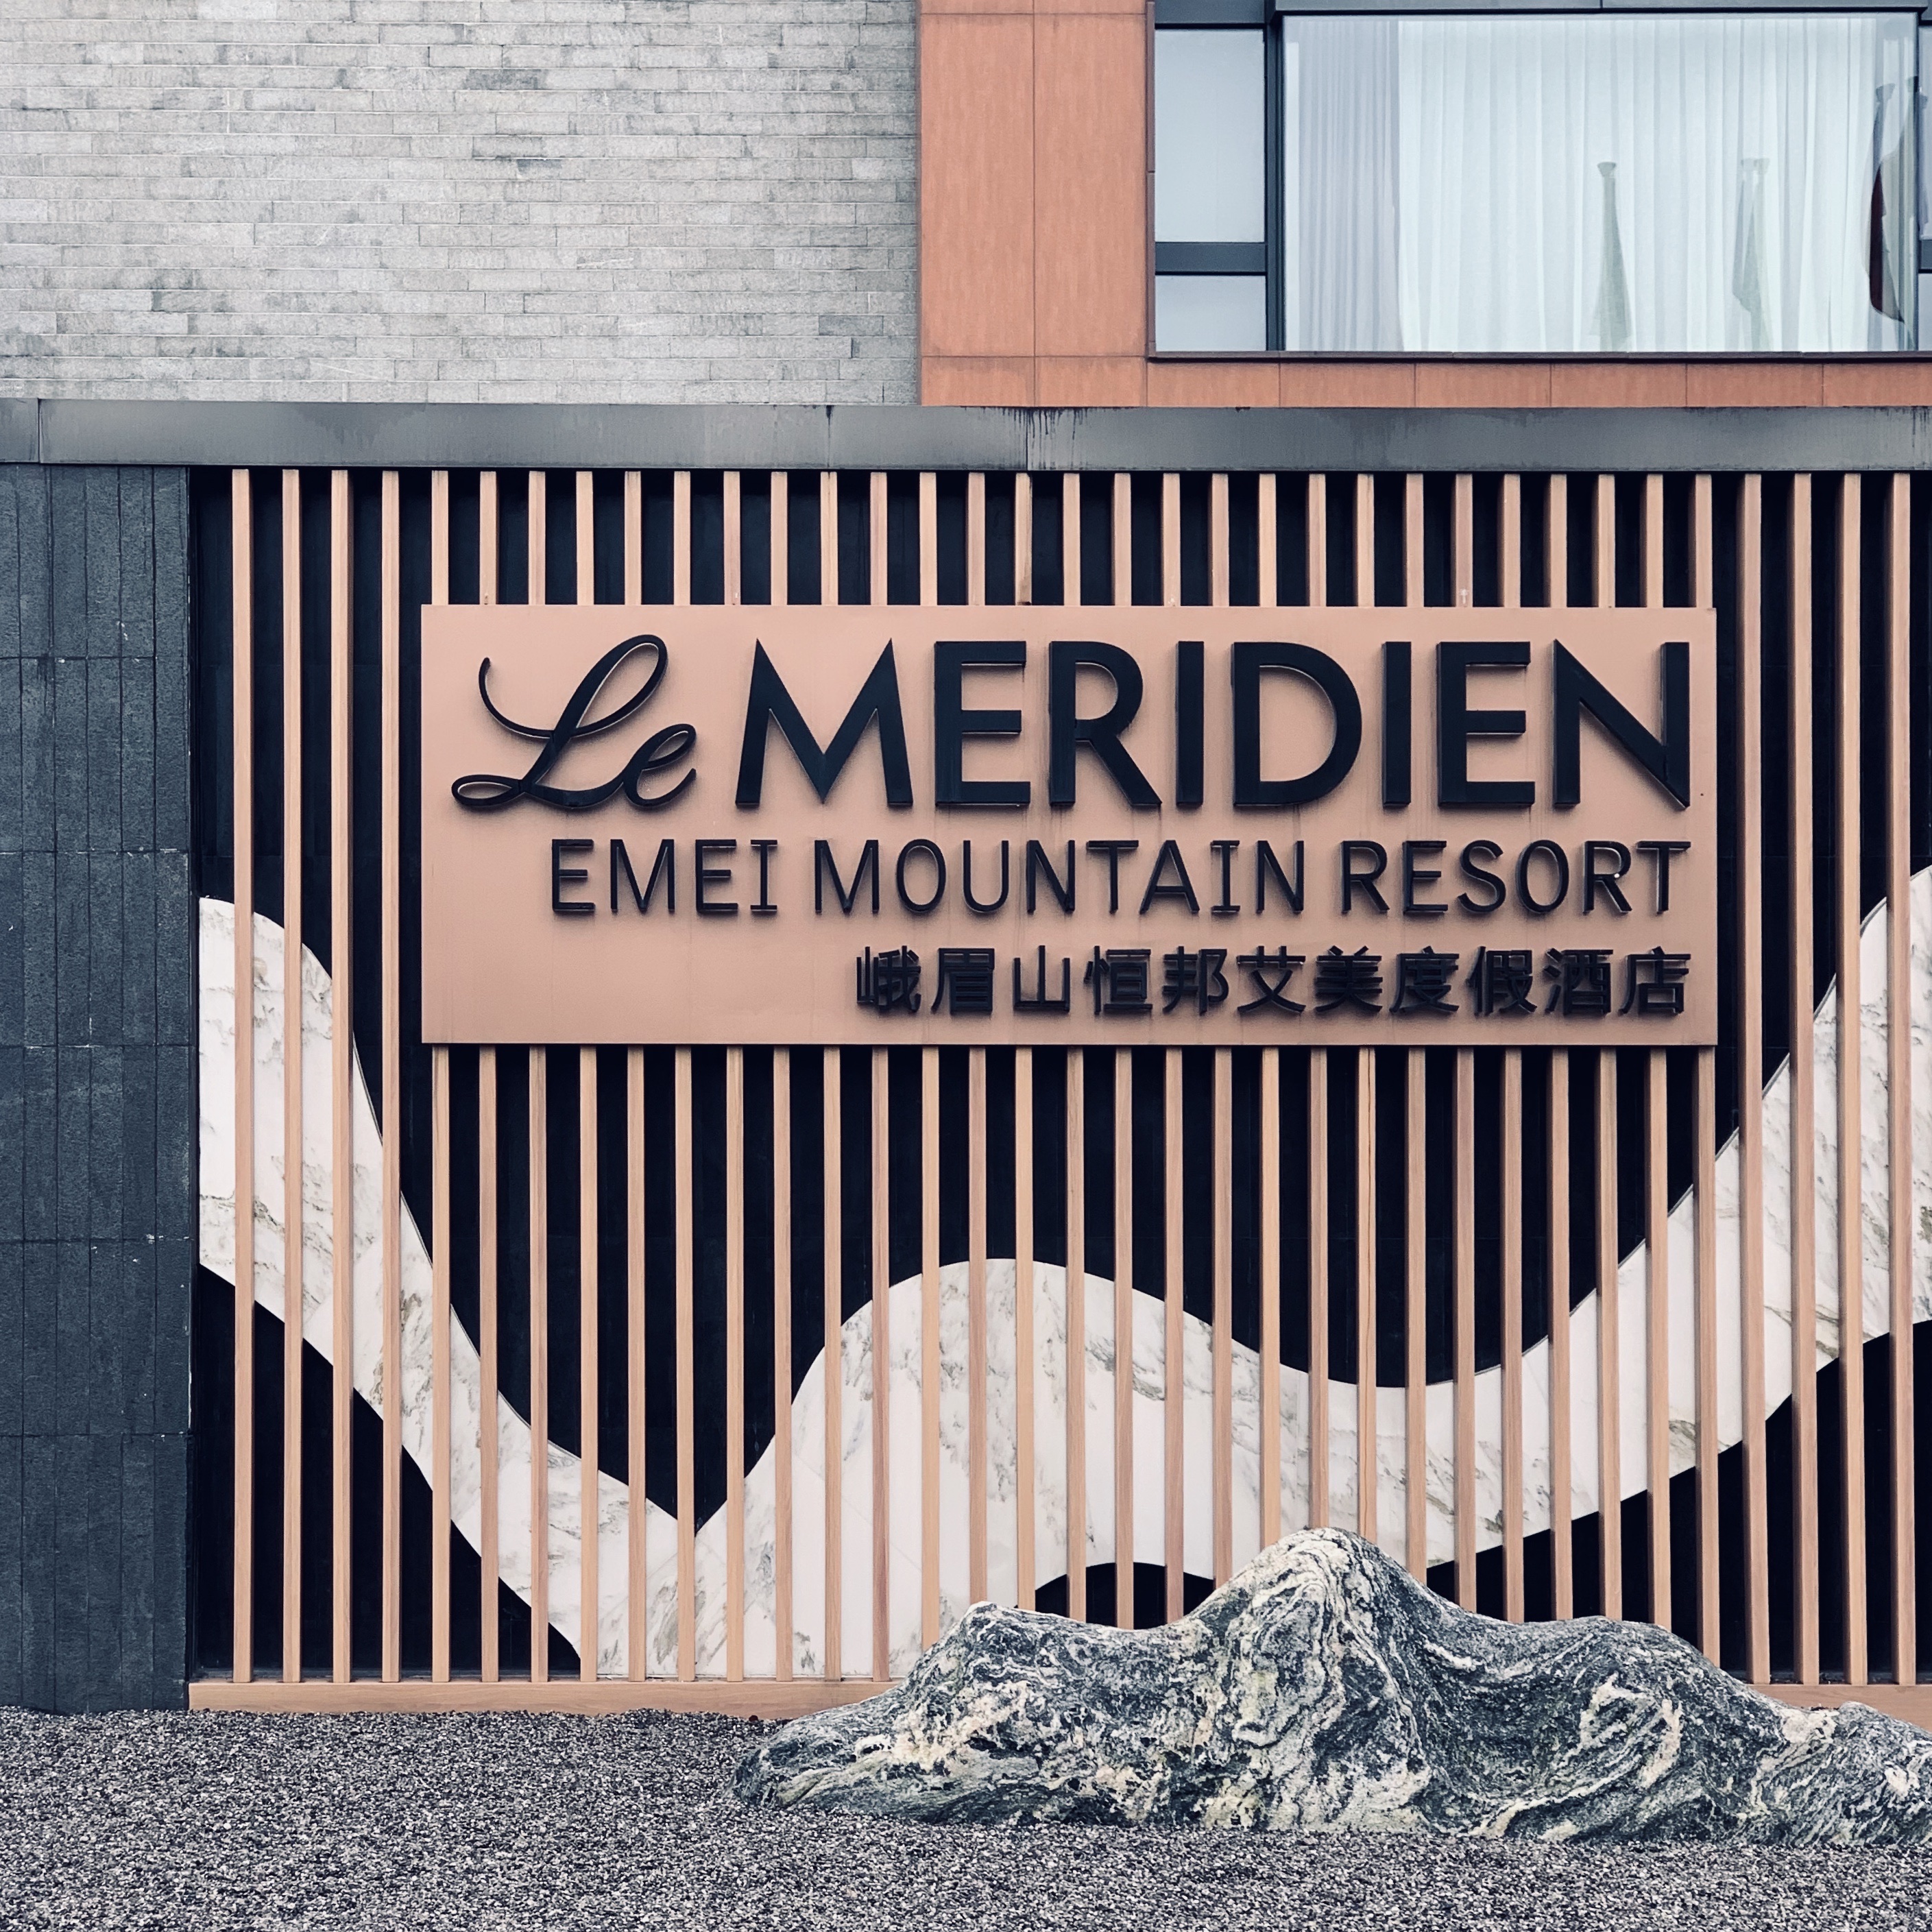 X. - Le Meridien Emei Mountain Resort